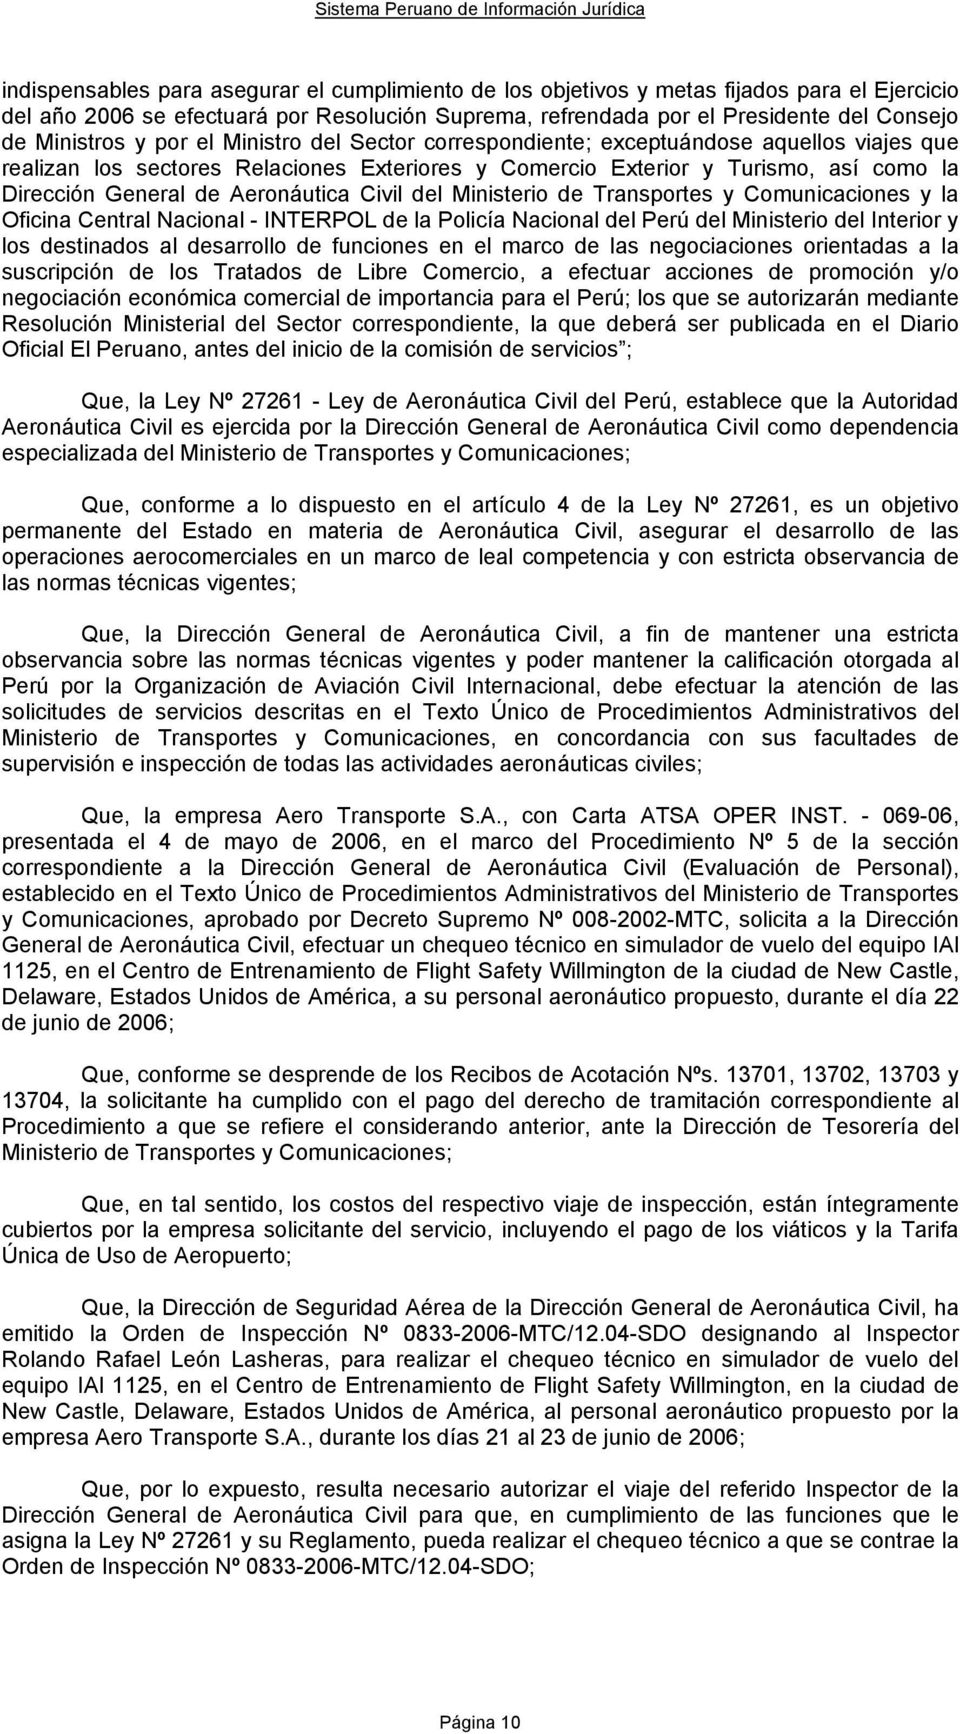 Civil del Ministerio de Transportes y Comunicaciones y la Oficina Central Nacional - INTERPOL de la Policía Nacional del Perú del Ministerio del Interior y los destinados al desarrollo de funciones